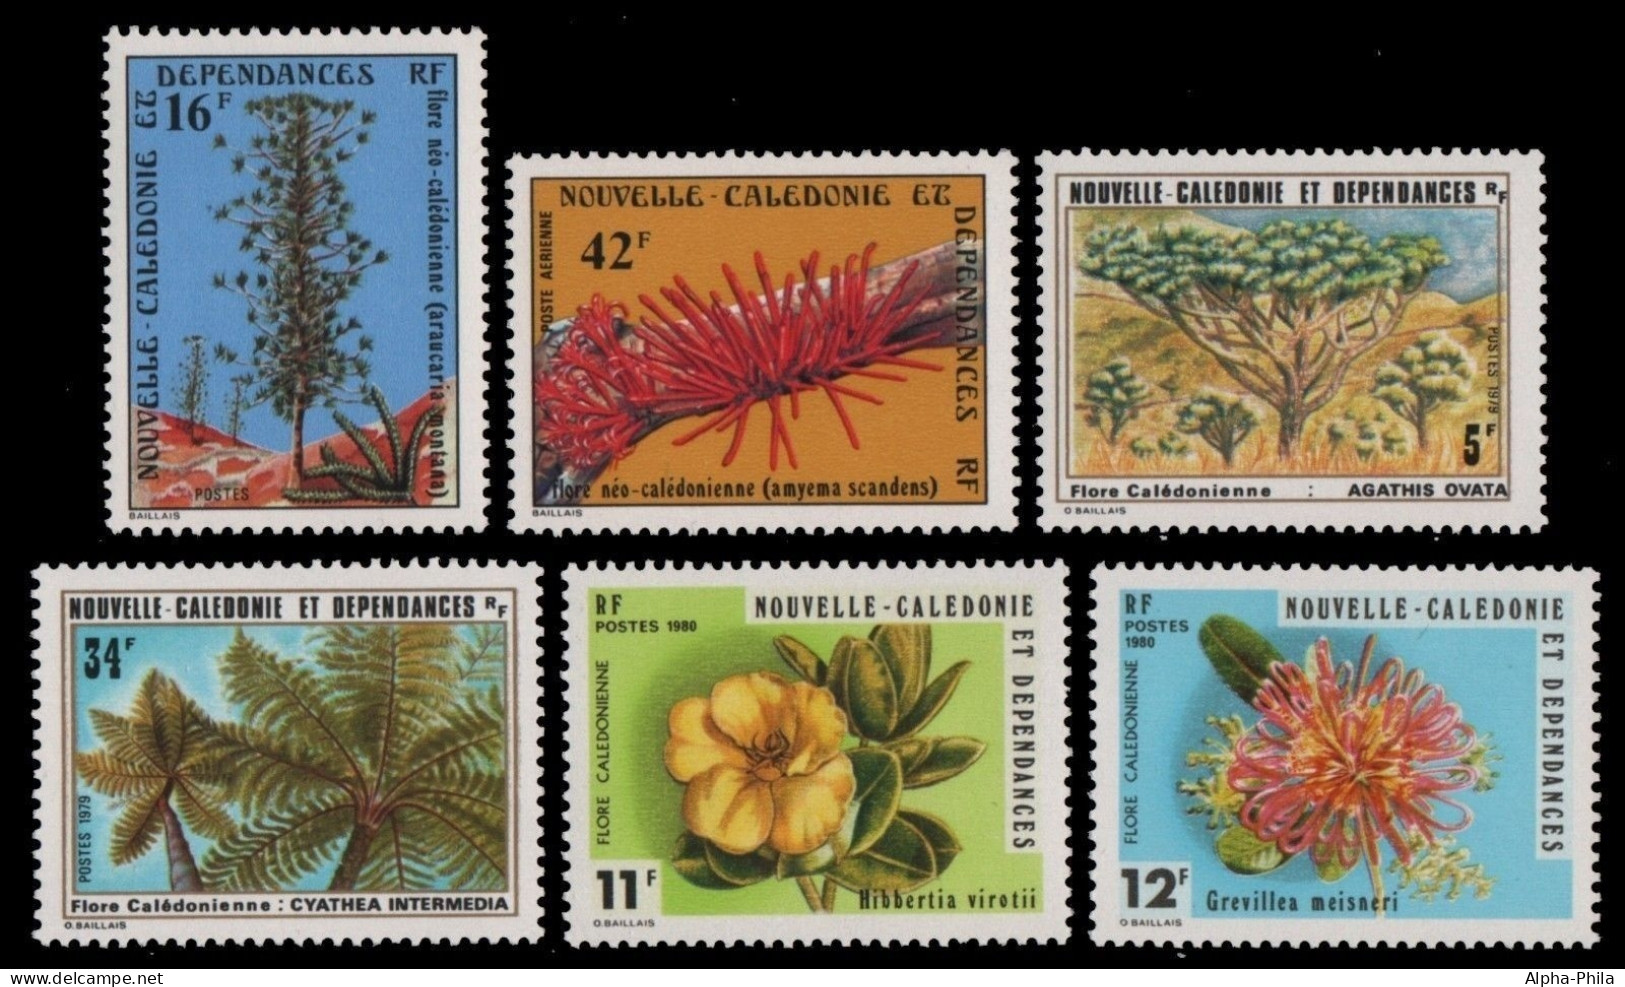 Neukaledonien 1978/80 - Mi-Nr. 608-609, 636-637 & 646-647 ** - MNH - Flora - Ongebruikt